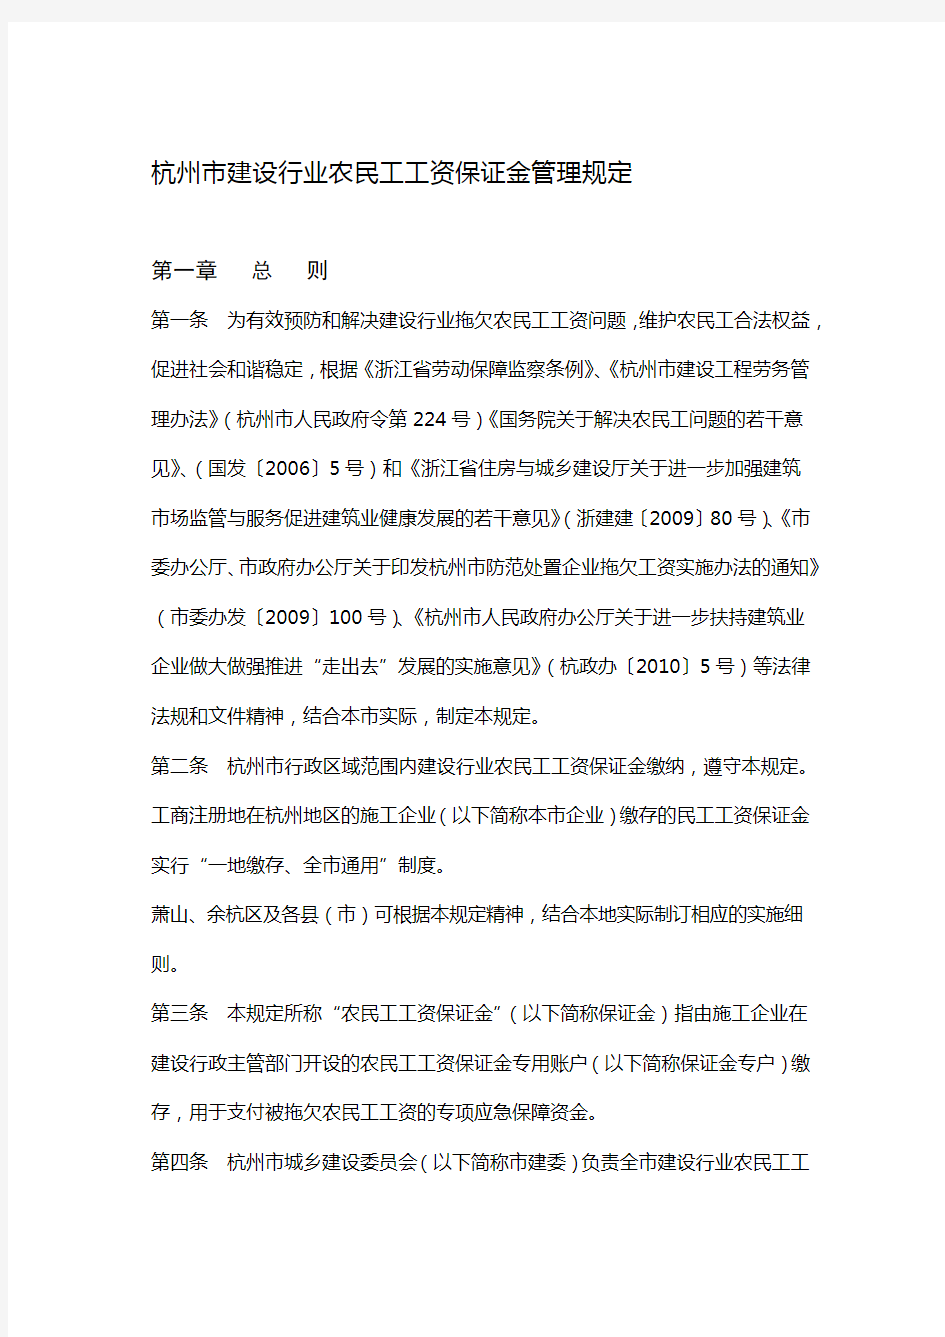 杭州市建设行业农民工工资保证金管理规定